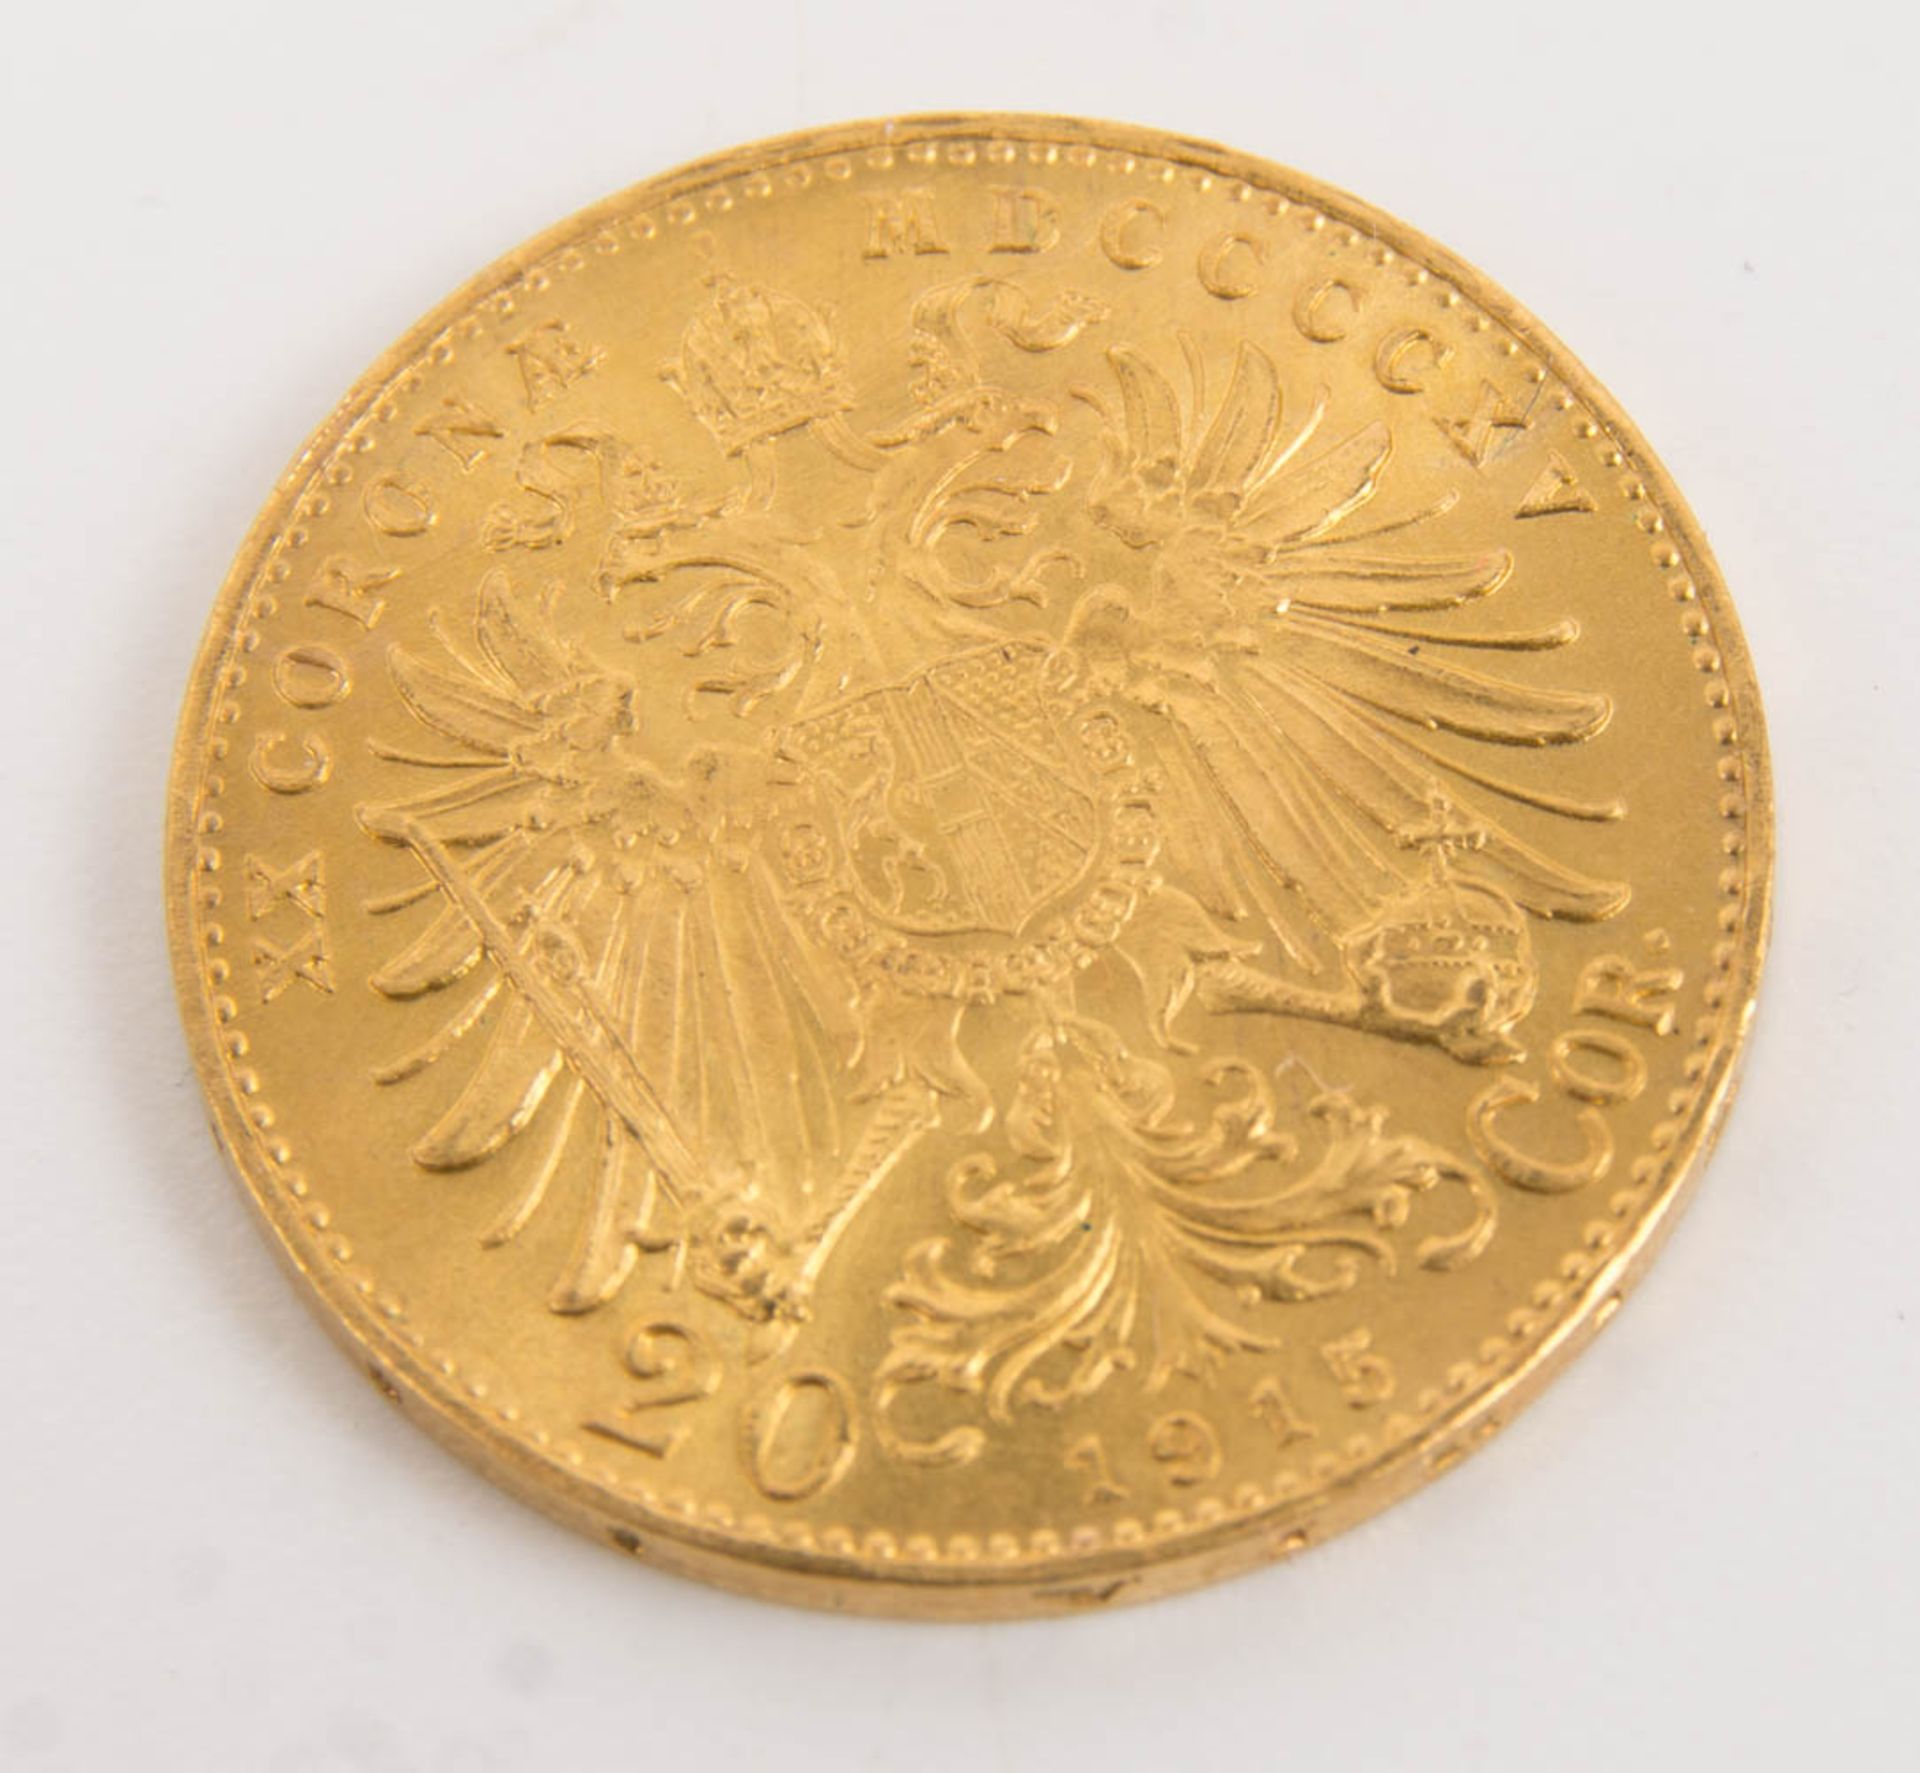 2 Goldmünzen 20 Kronen, Nachprägung 1915. - Bild 5 aus 7